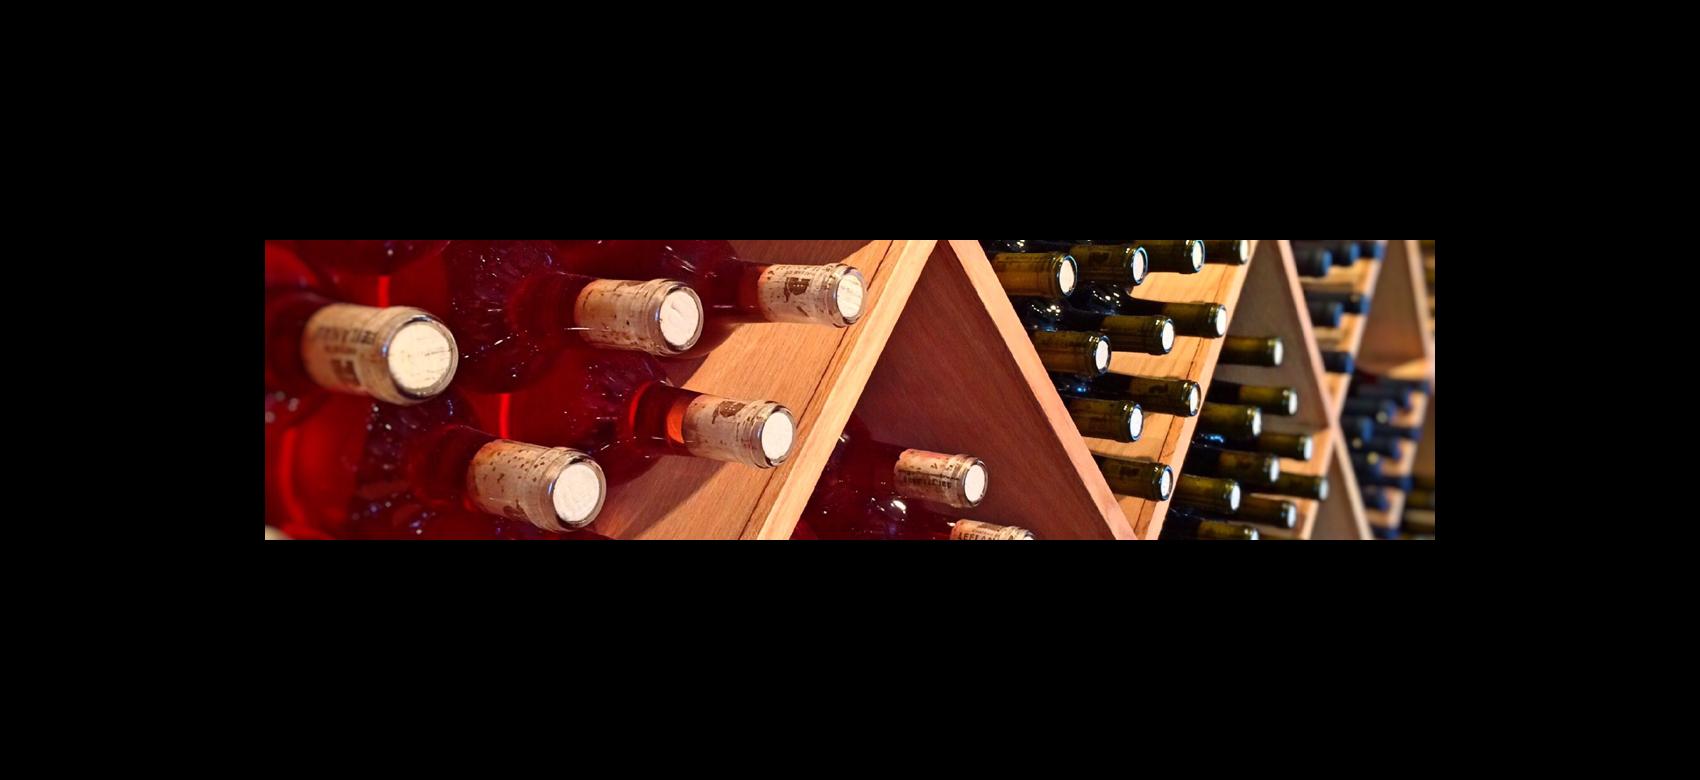 Imagen de estantes con botellas de vino